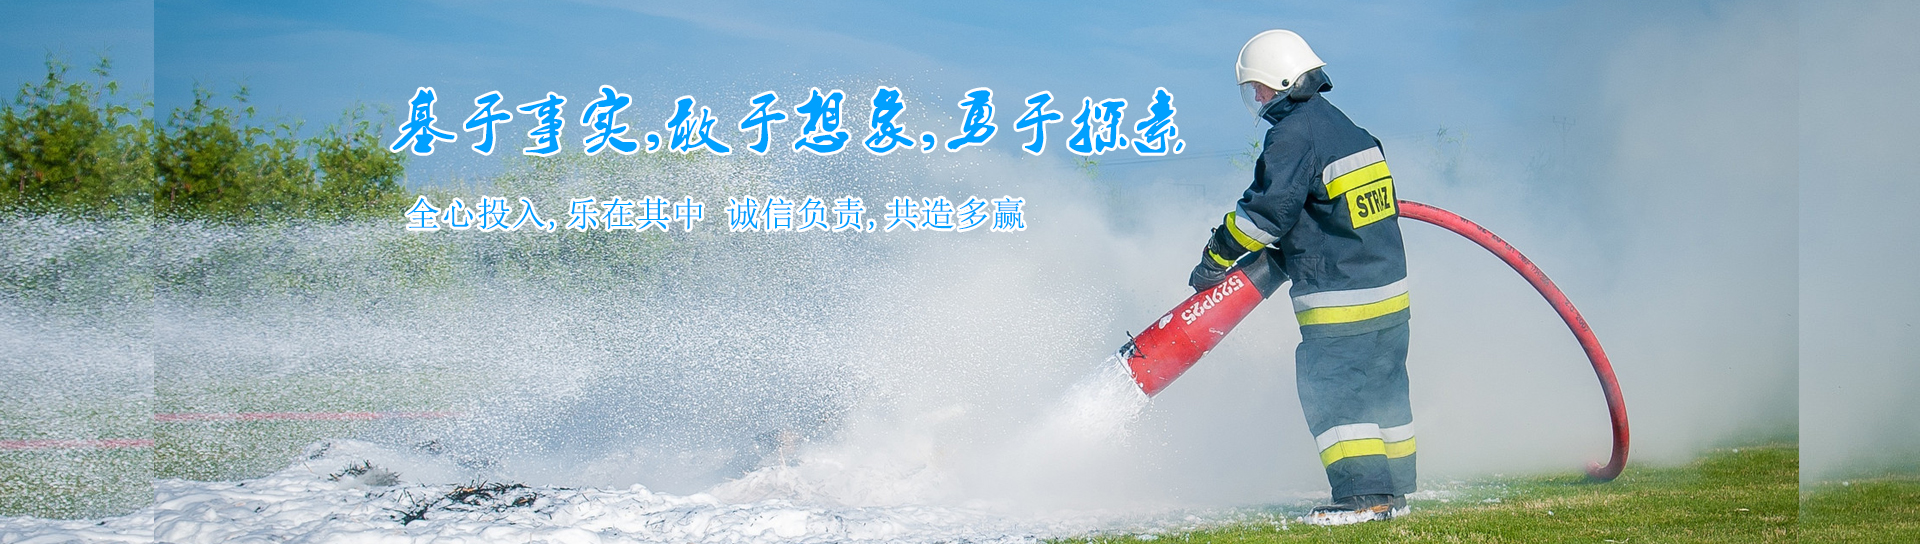 贵州消防设施维护保养